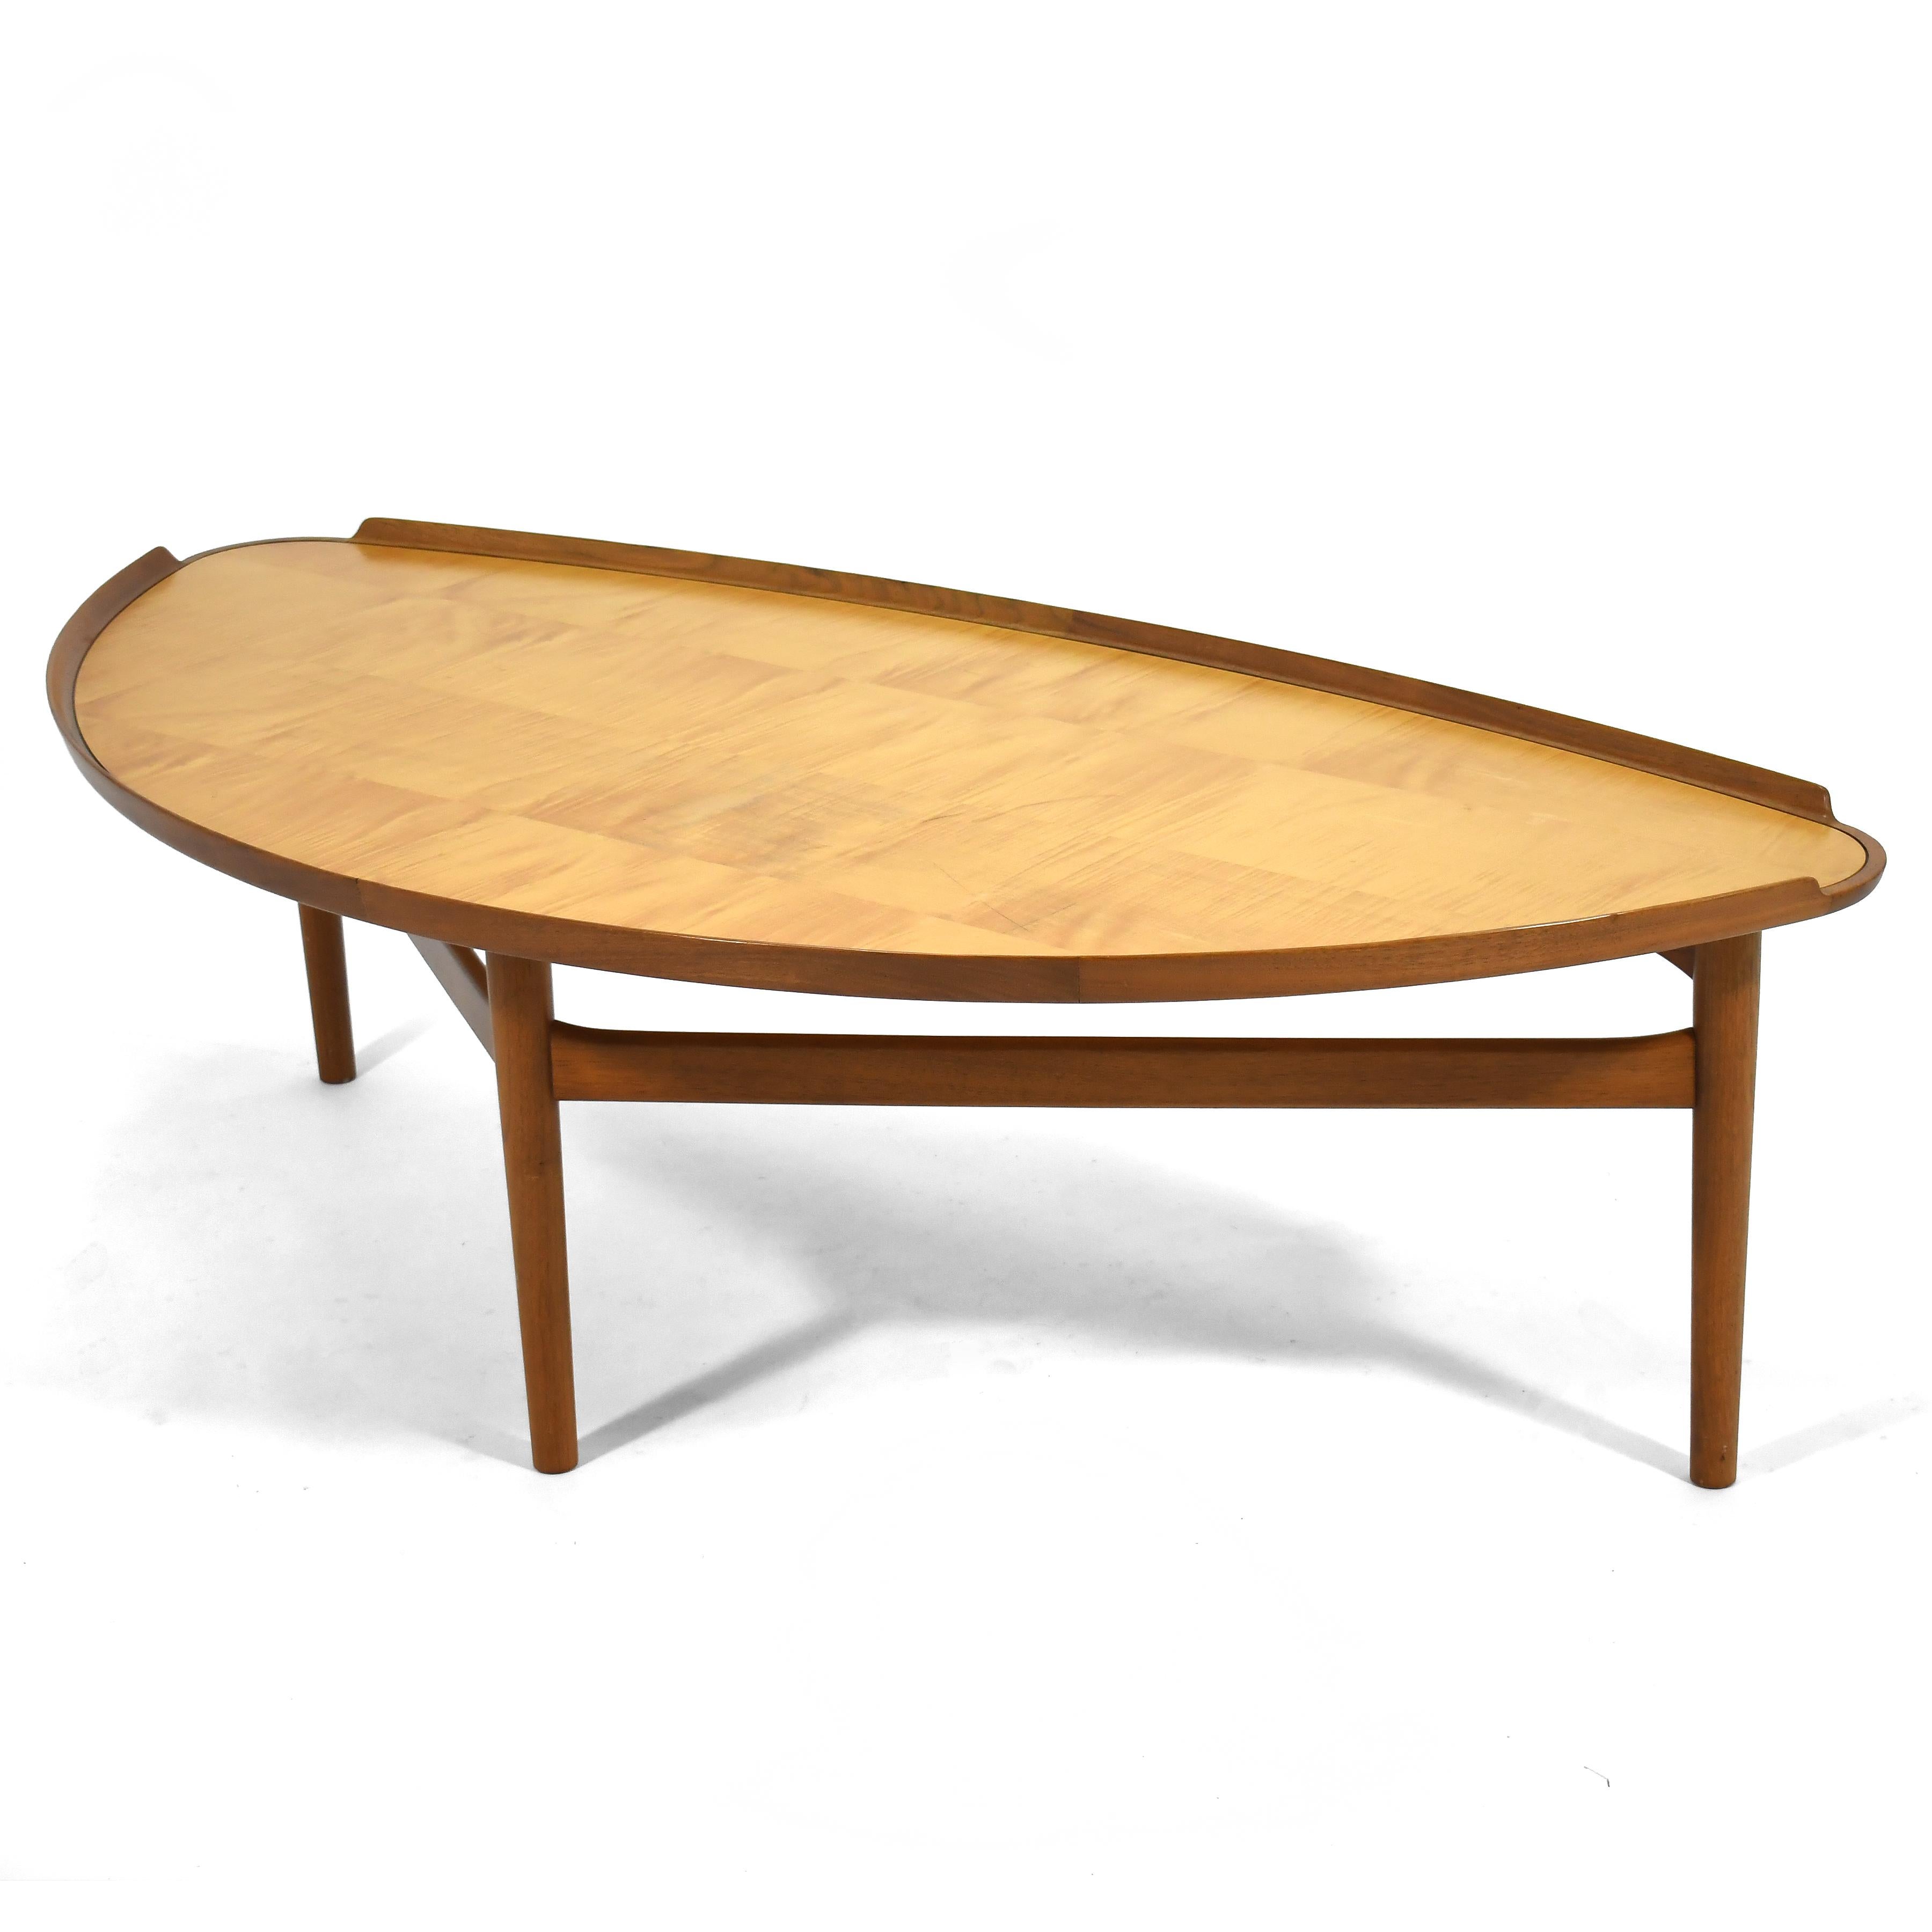 Cette table basse du maître danois Finn Juhls se distingue par ses formes sublimes, sa grande échelle et ses détails ravissants. L'un des designs créés par Juhls en 1951 pour le fabricant américain Baker, cette table a fait l'objet d'une très brève